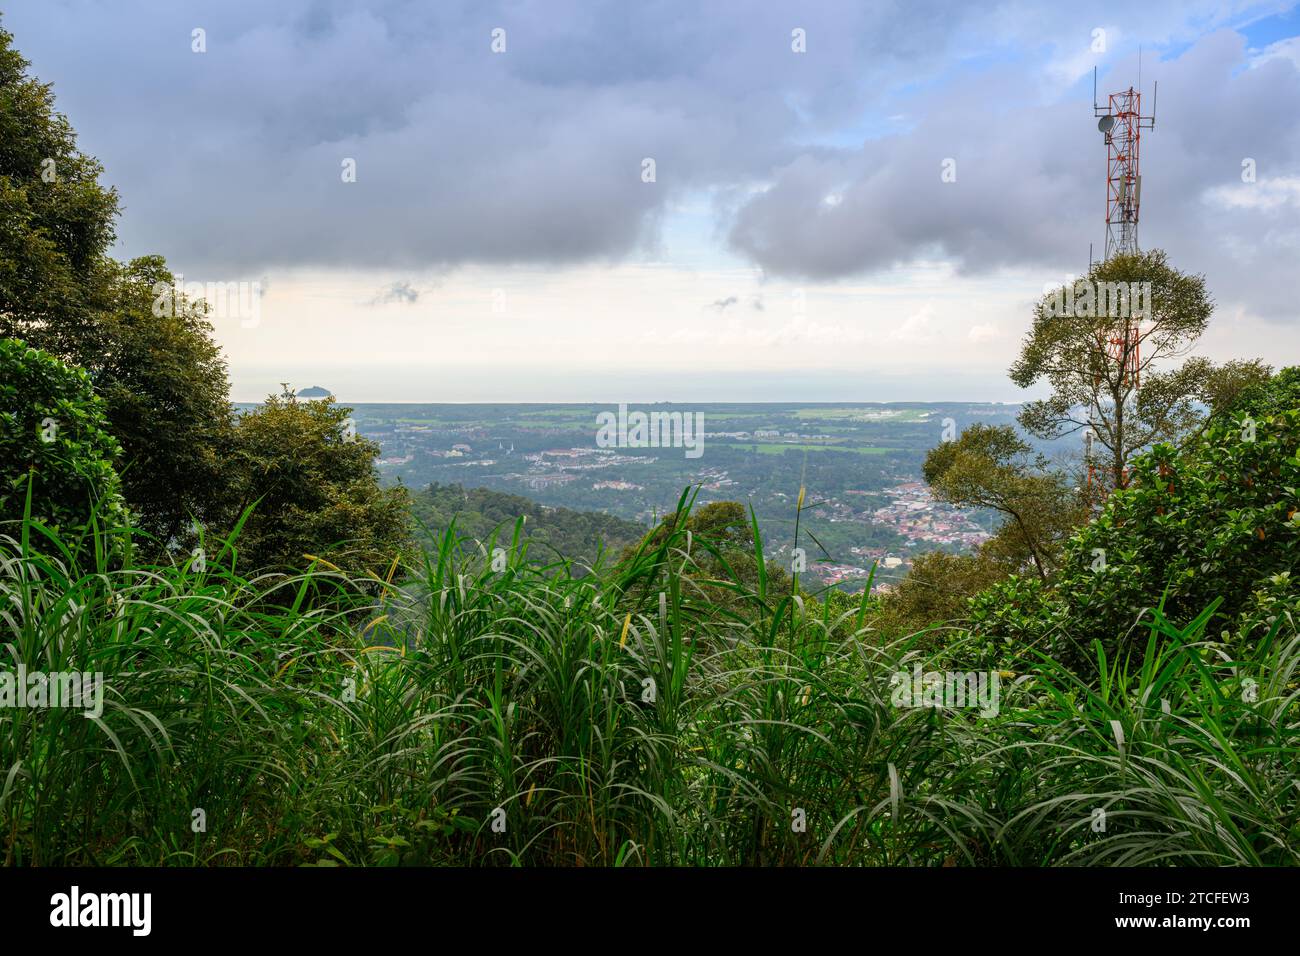 Cityscape of Balik Pulau, Penang, Malaysia Stock Photo